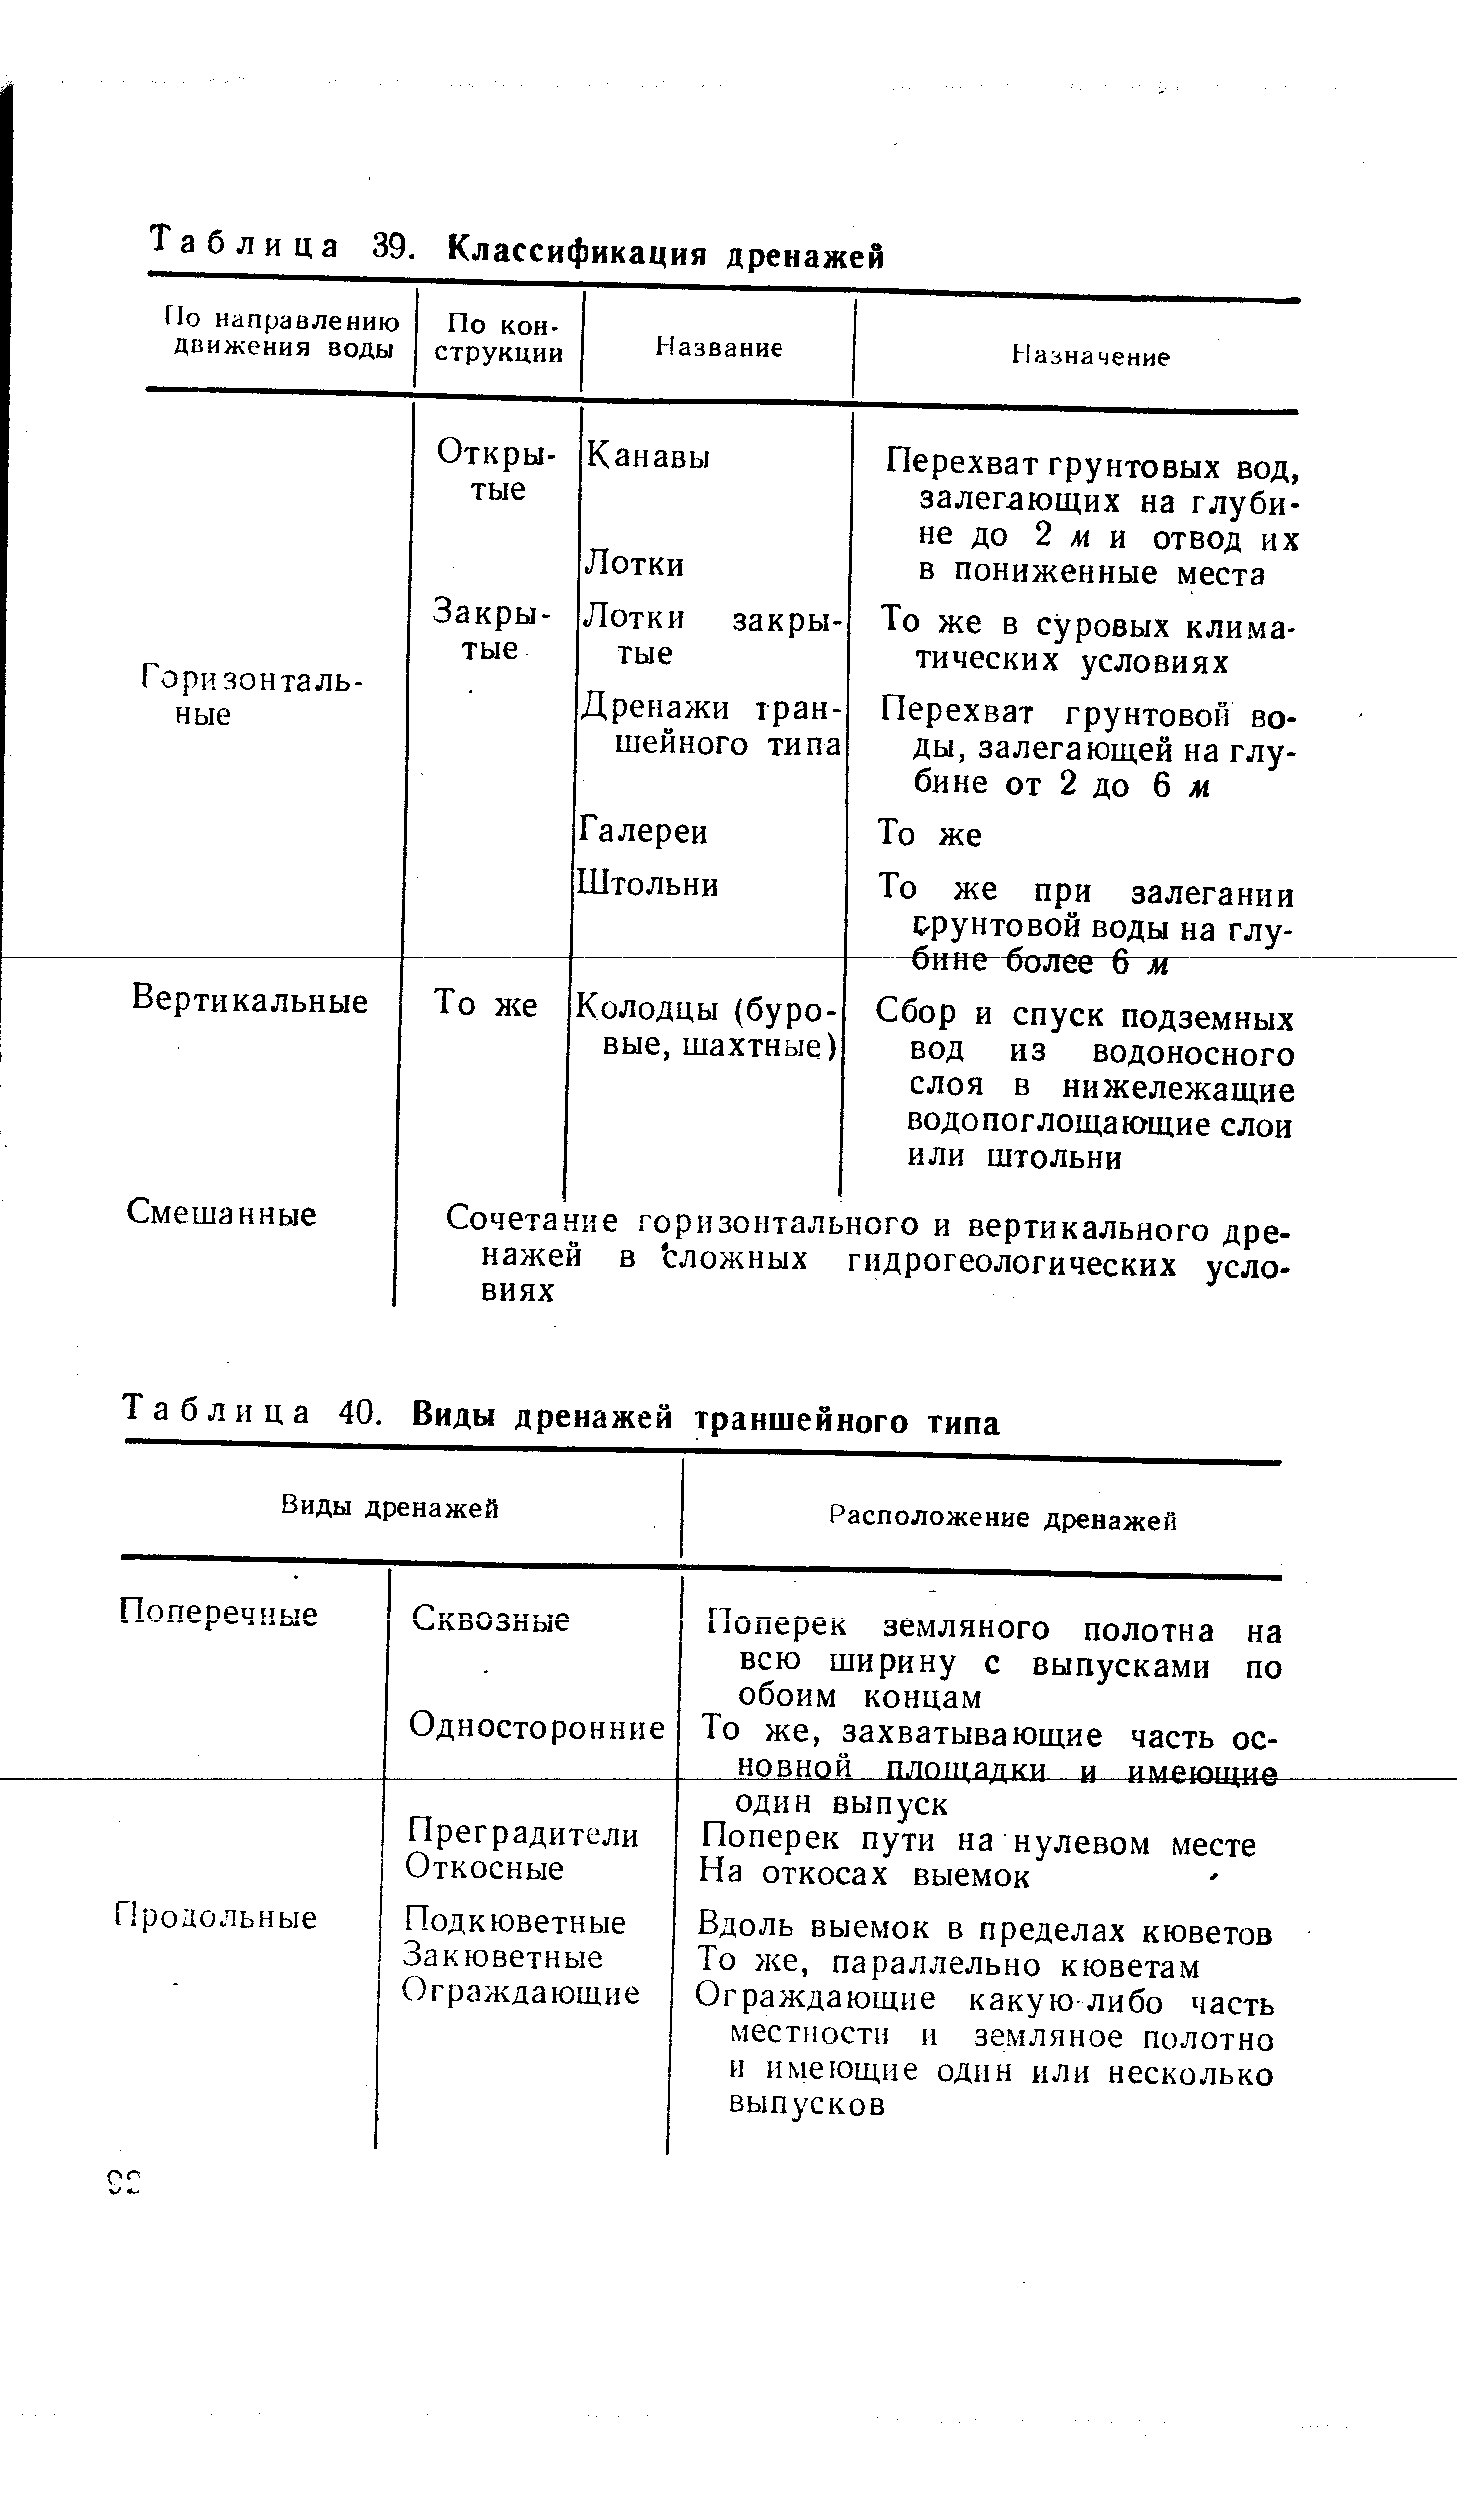 Таблица 40. Виды дренажей траншейного типа
